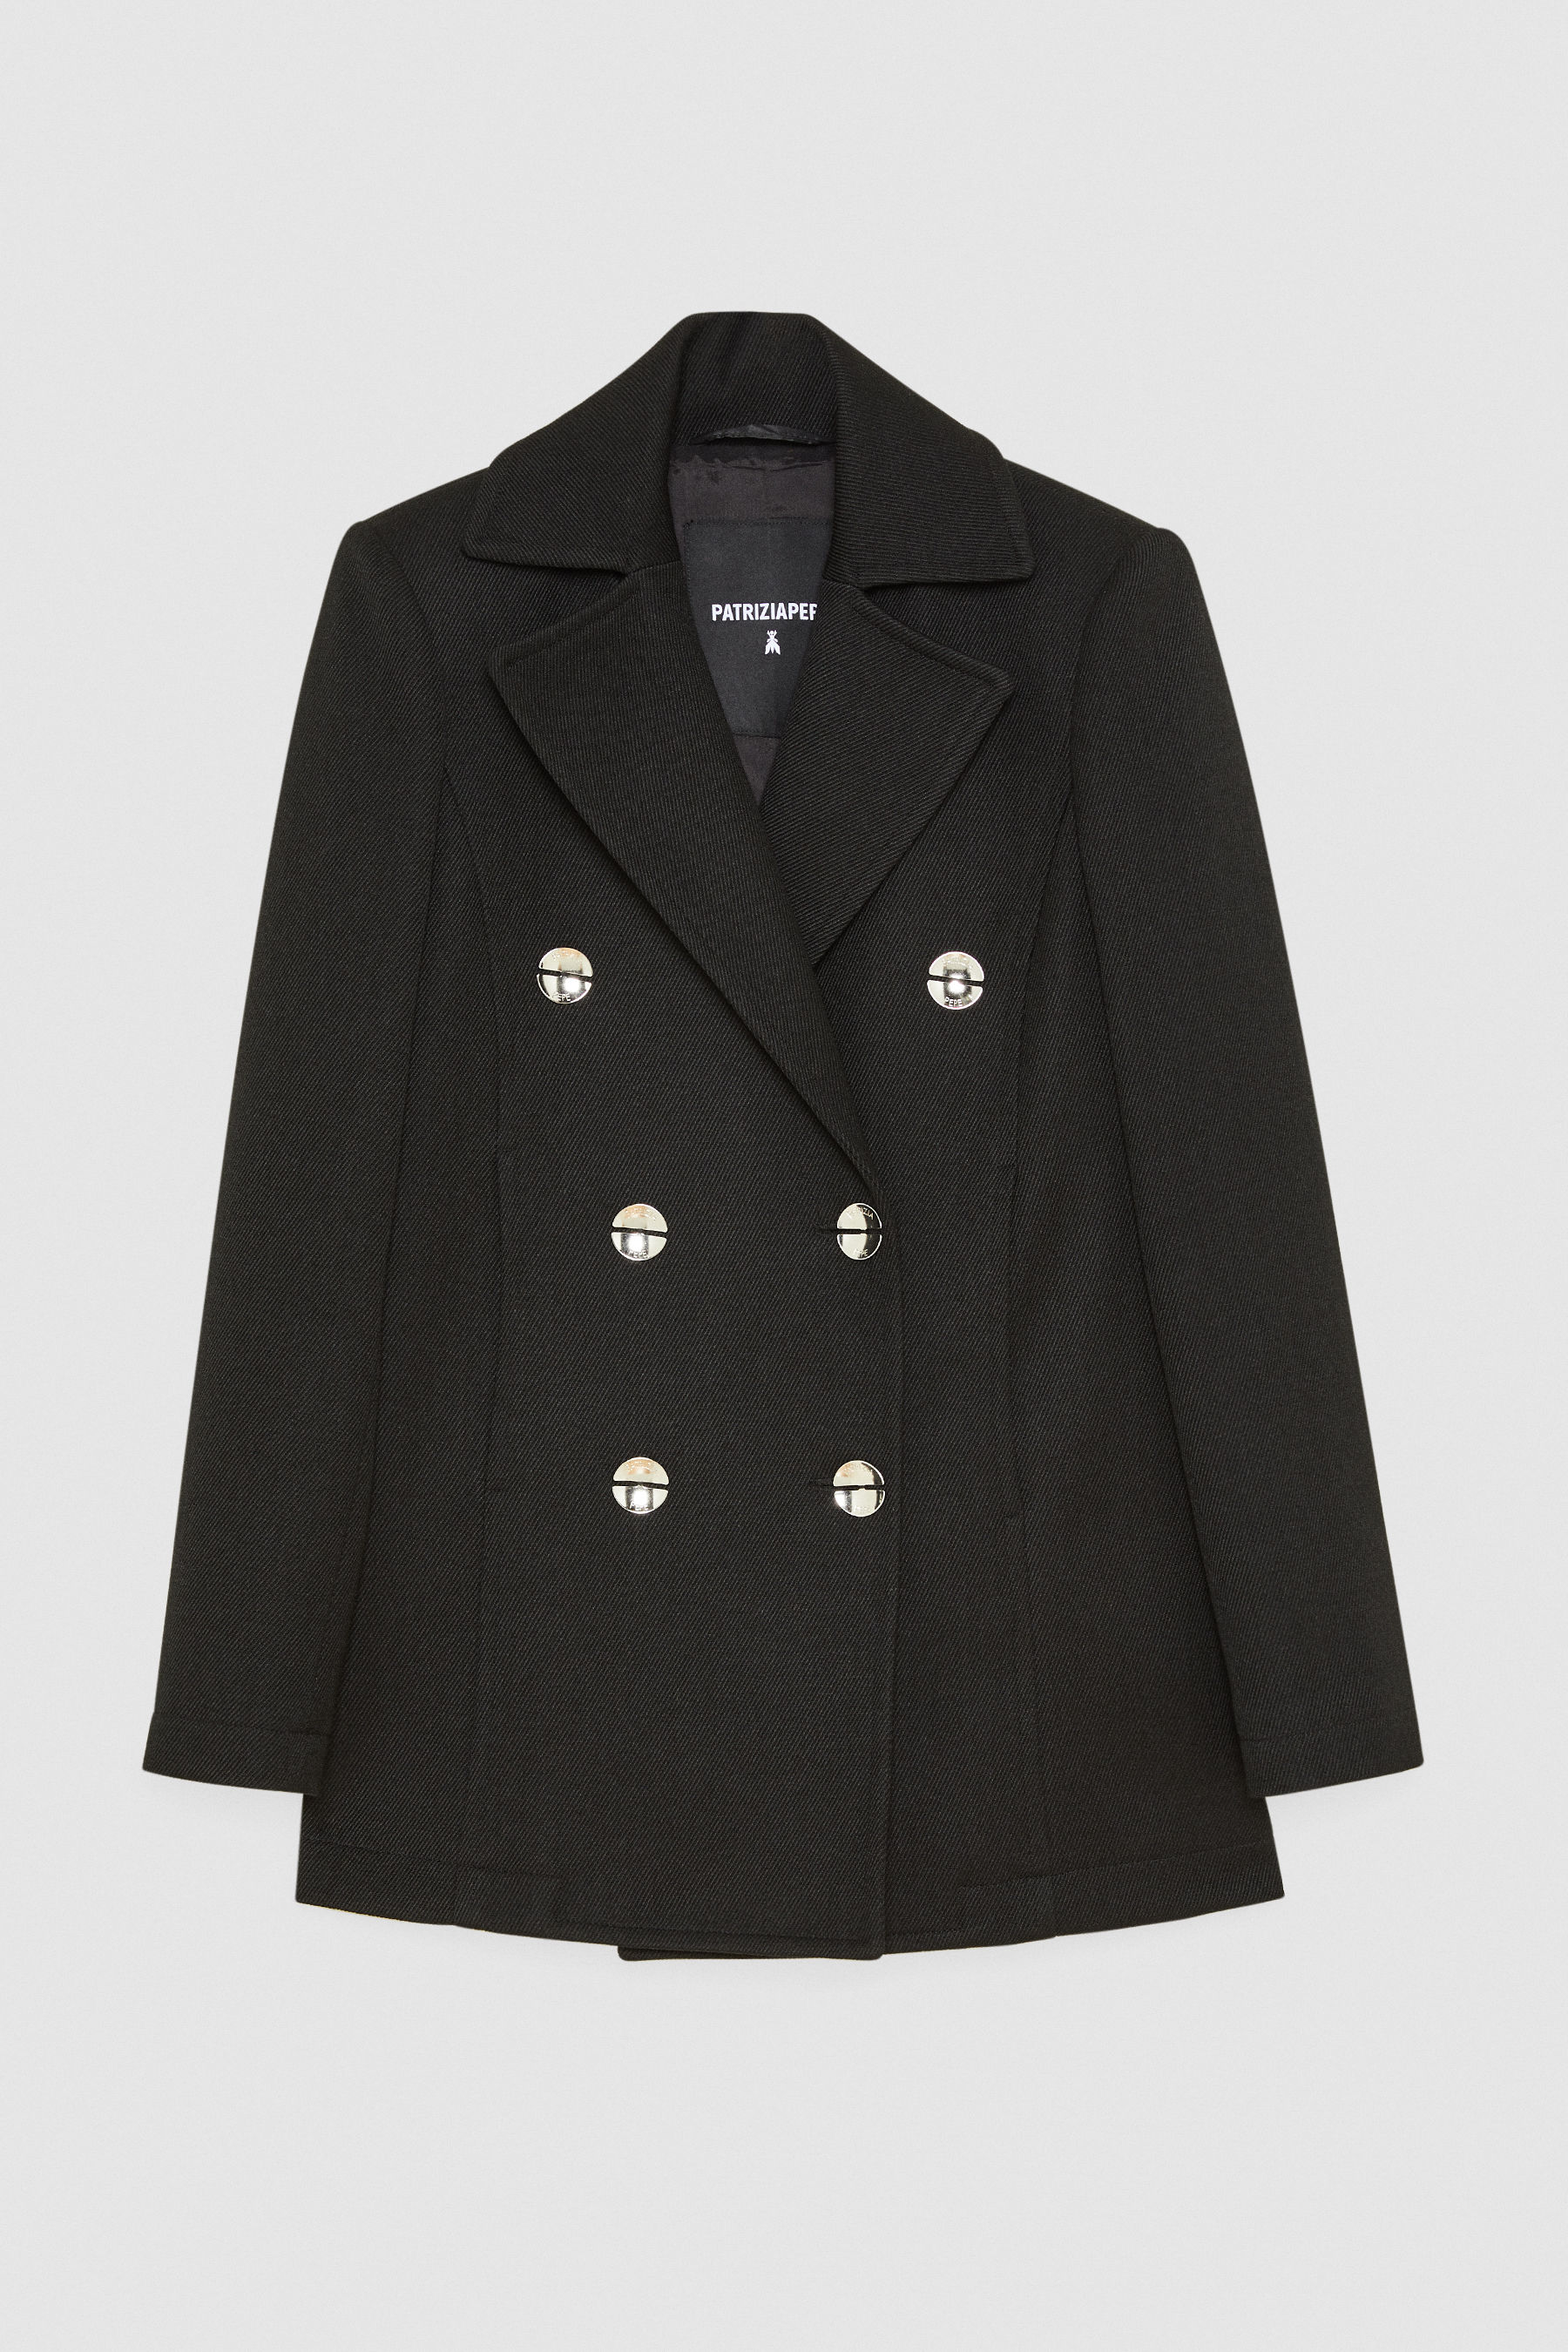 Coats for women: long or short coats | Patrizia Pepe